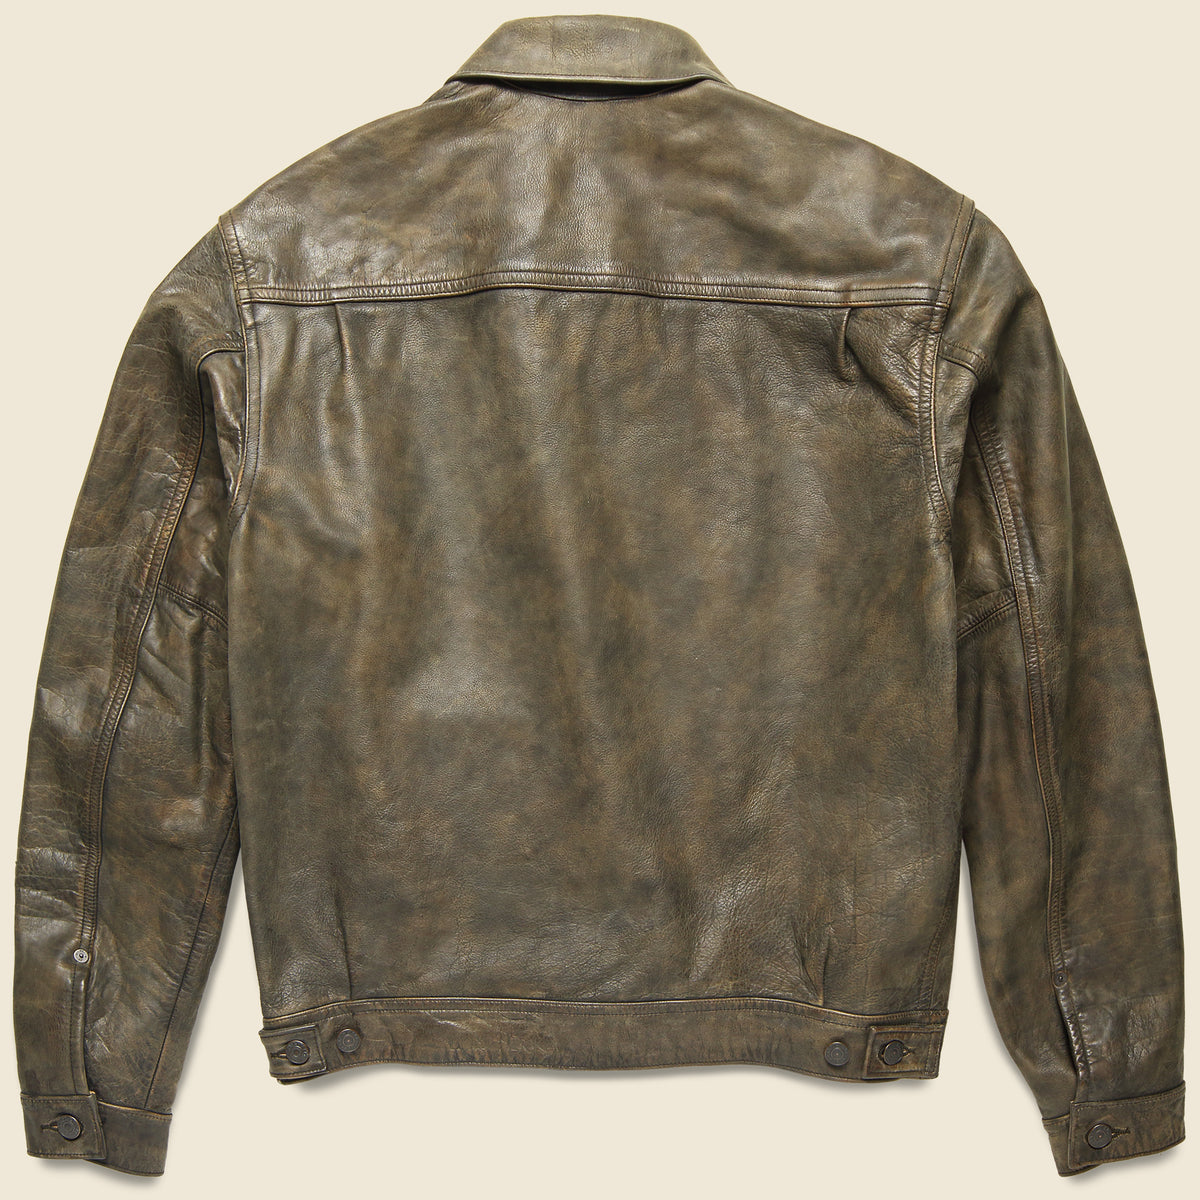 Levis LVC 1930s Menlo leather jacket - question